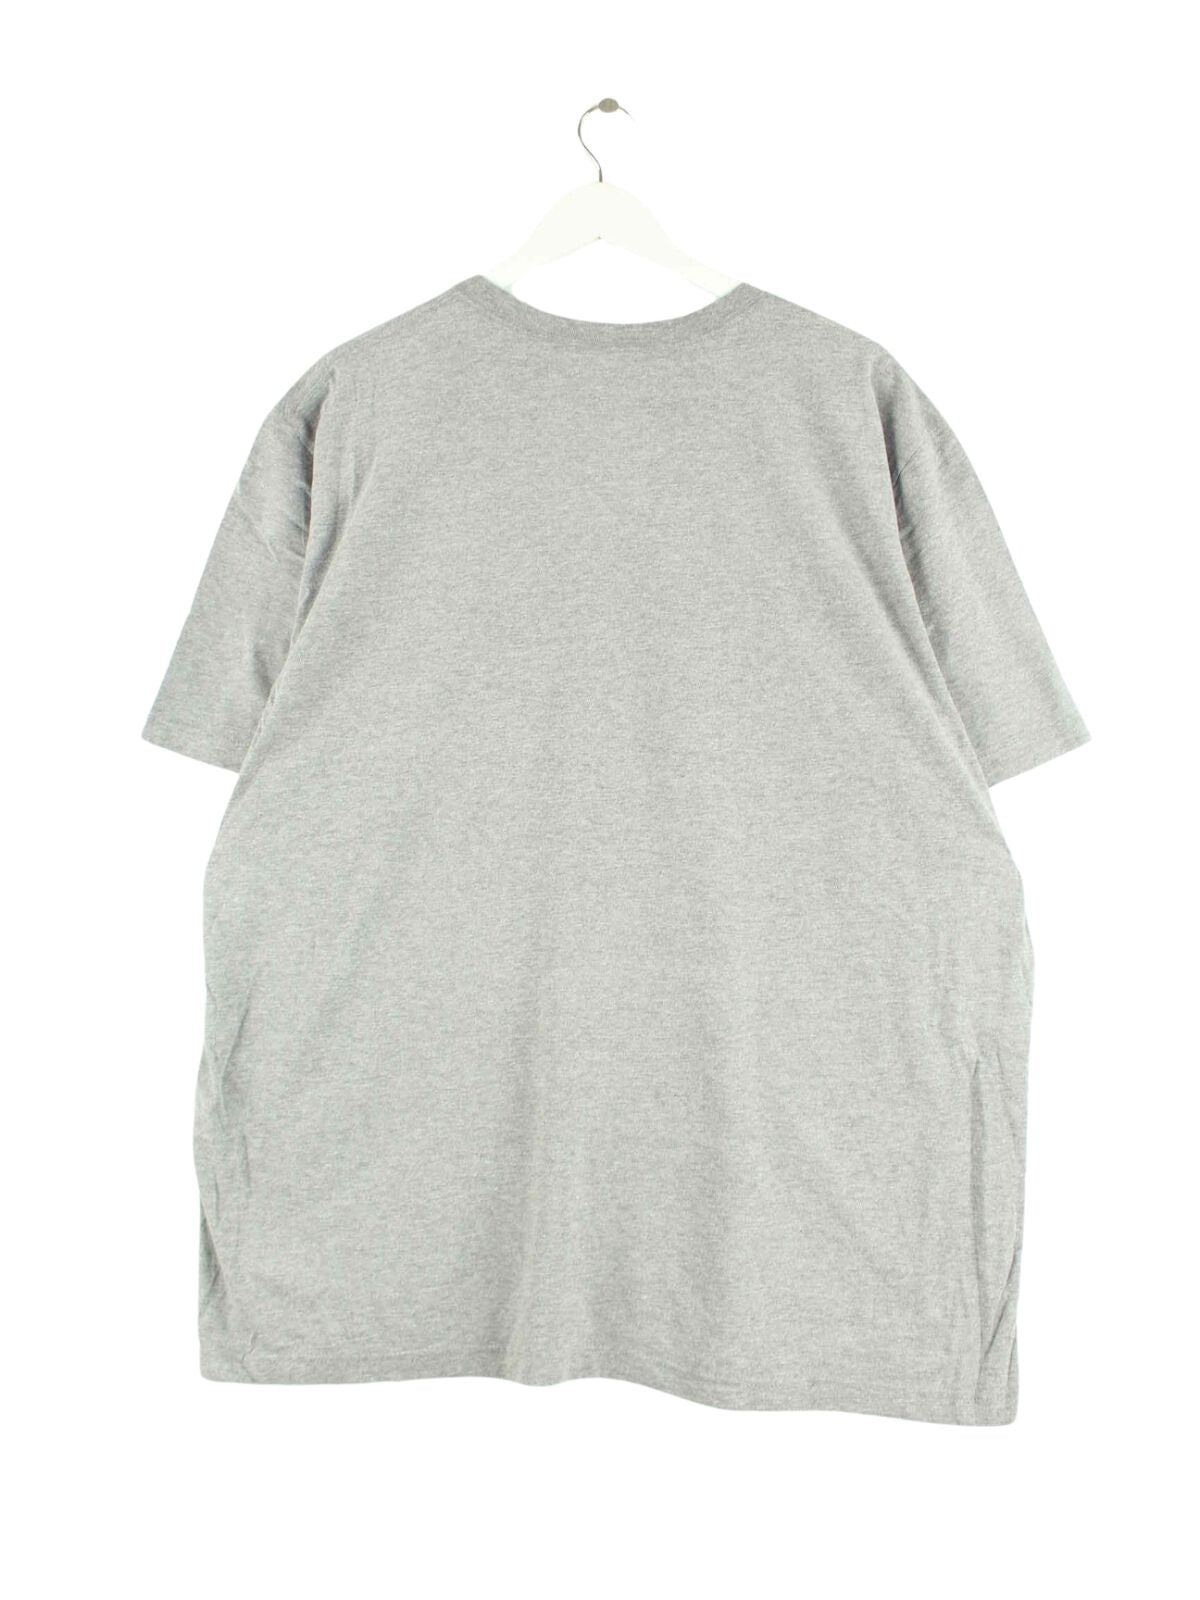 Nike Ohio State Print T-Shirt Grau XXL (back image)